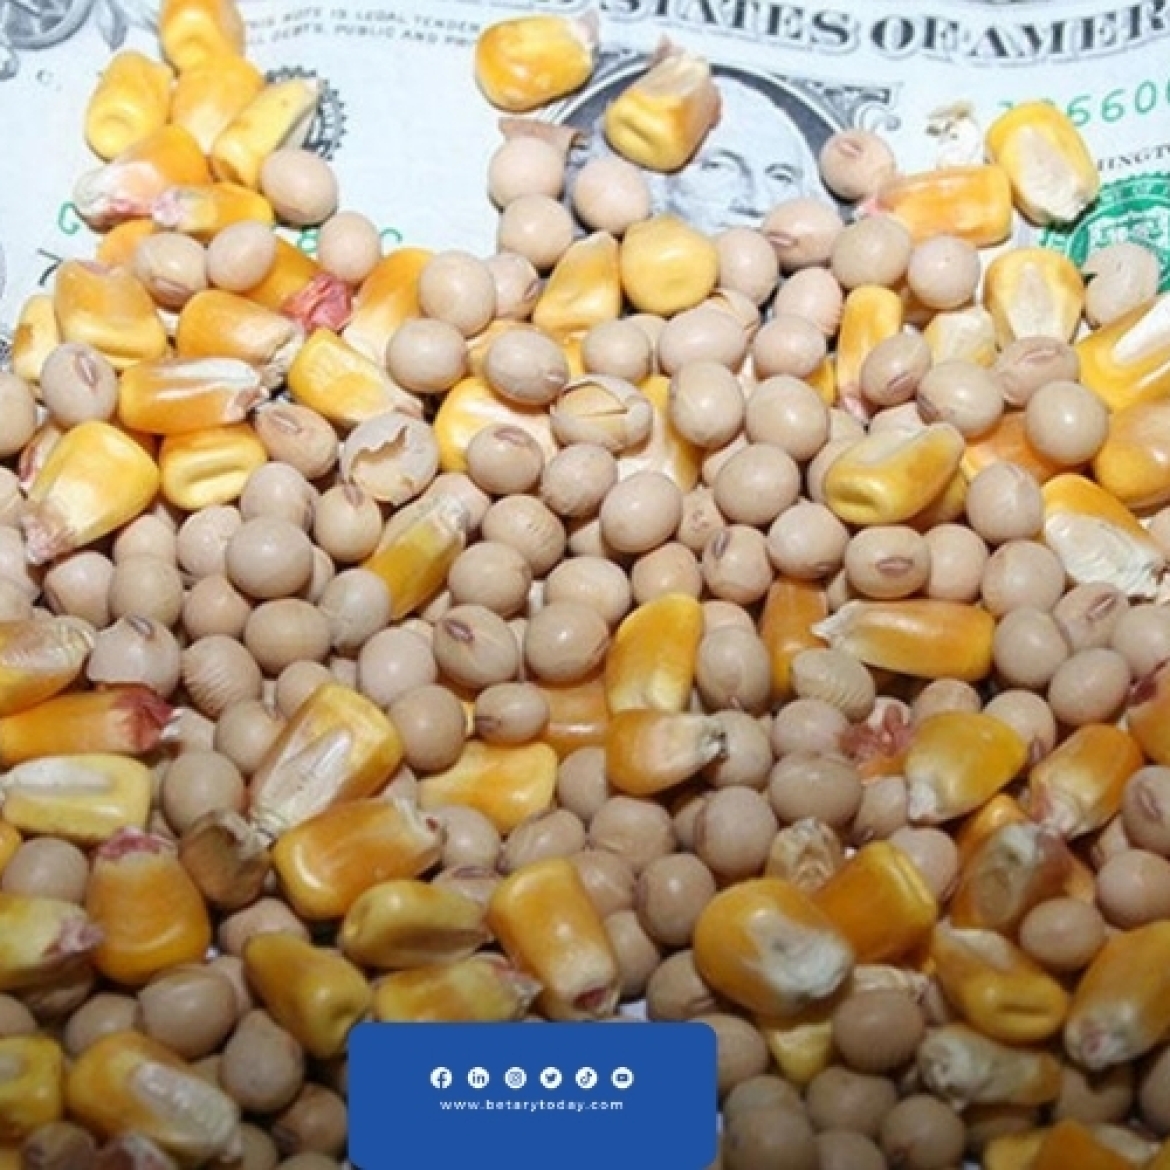 تراجع كبير في أسعار الذرة الصفراء وفول الصويا اليوم الخميس في الأسواق